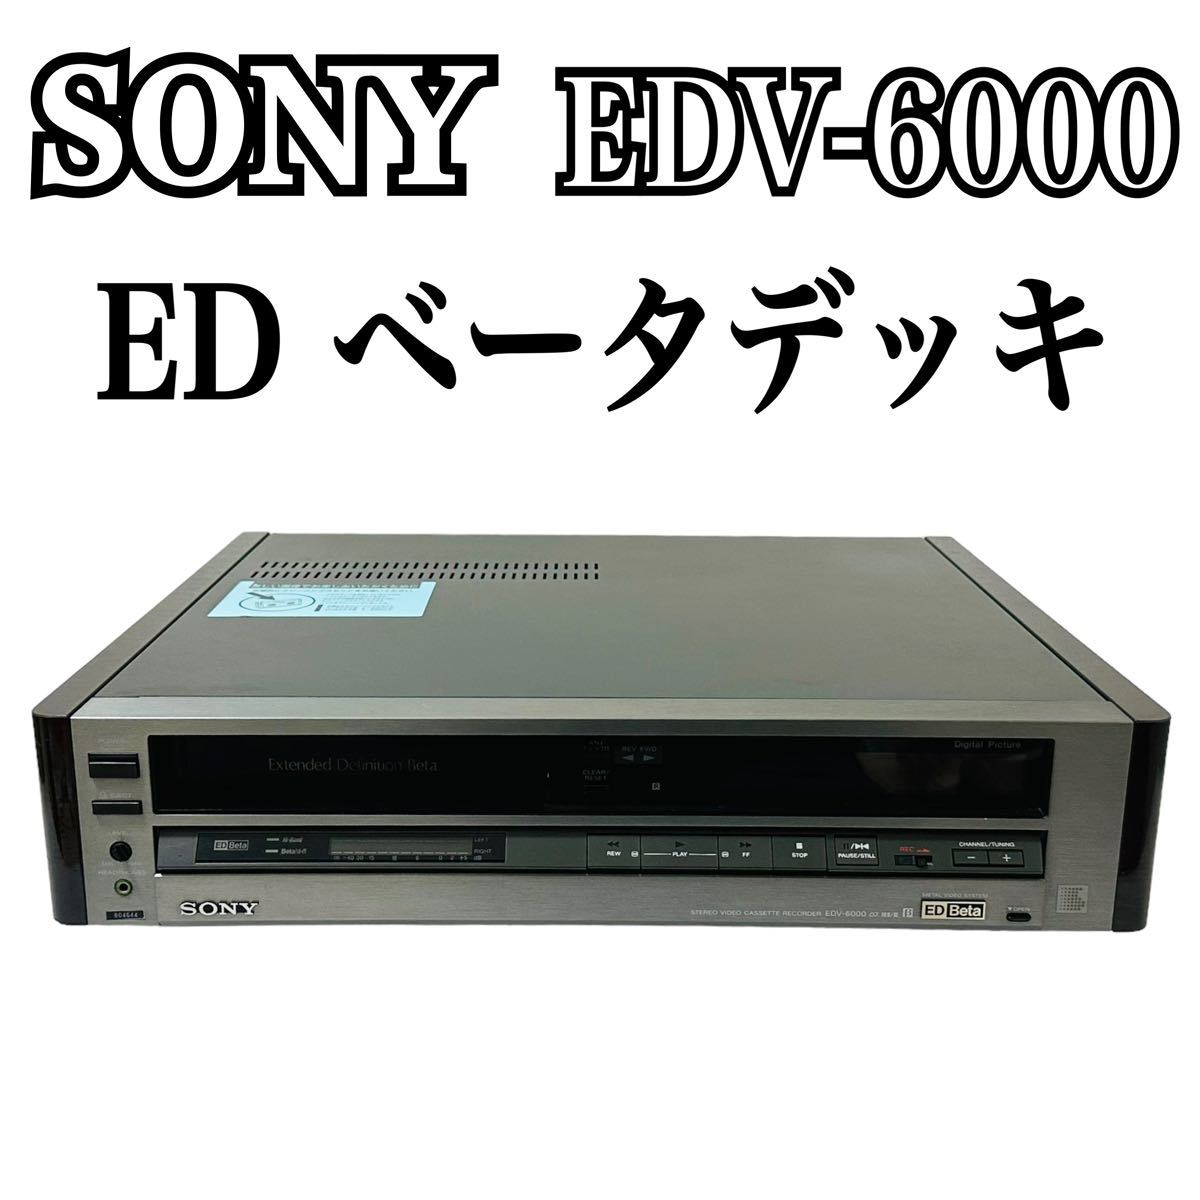 ヤフオク! -「sony edv-6000」の落札相場・落札価格